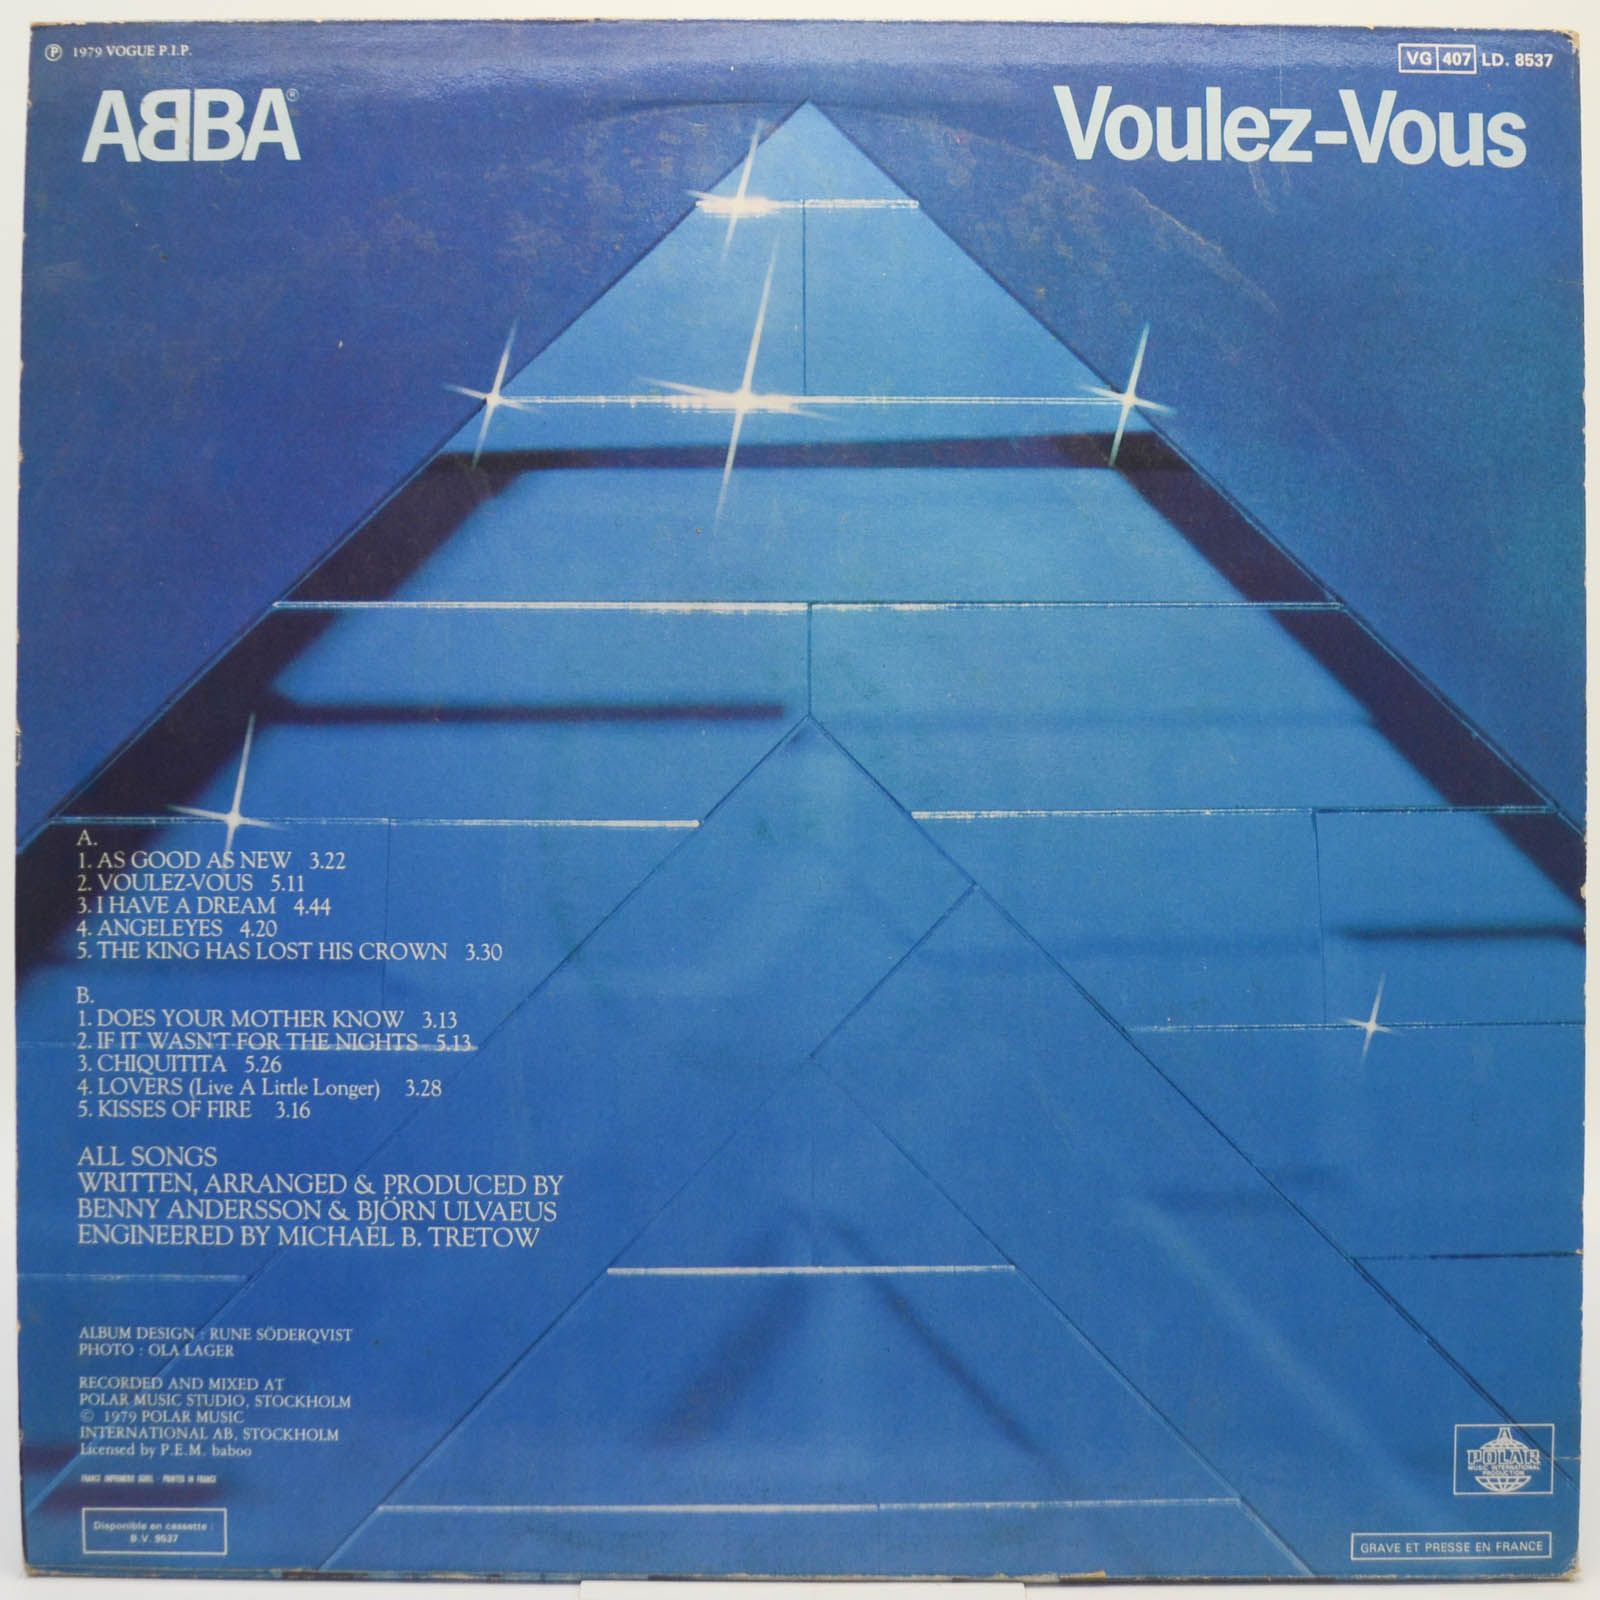 ABBA — Voulez-Vous, 1979